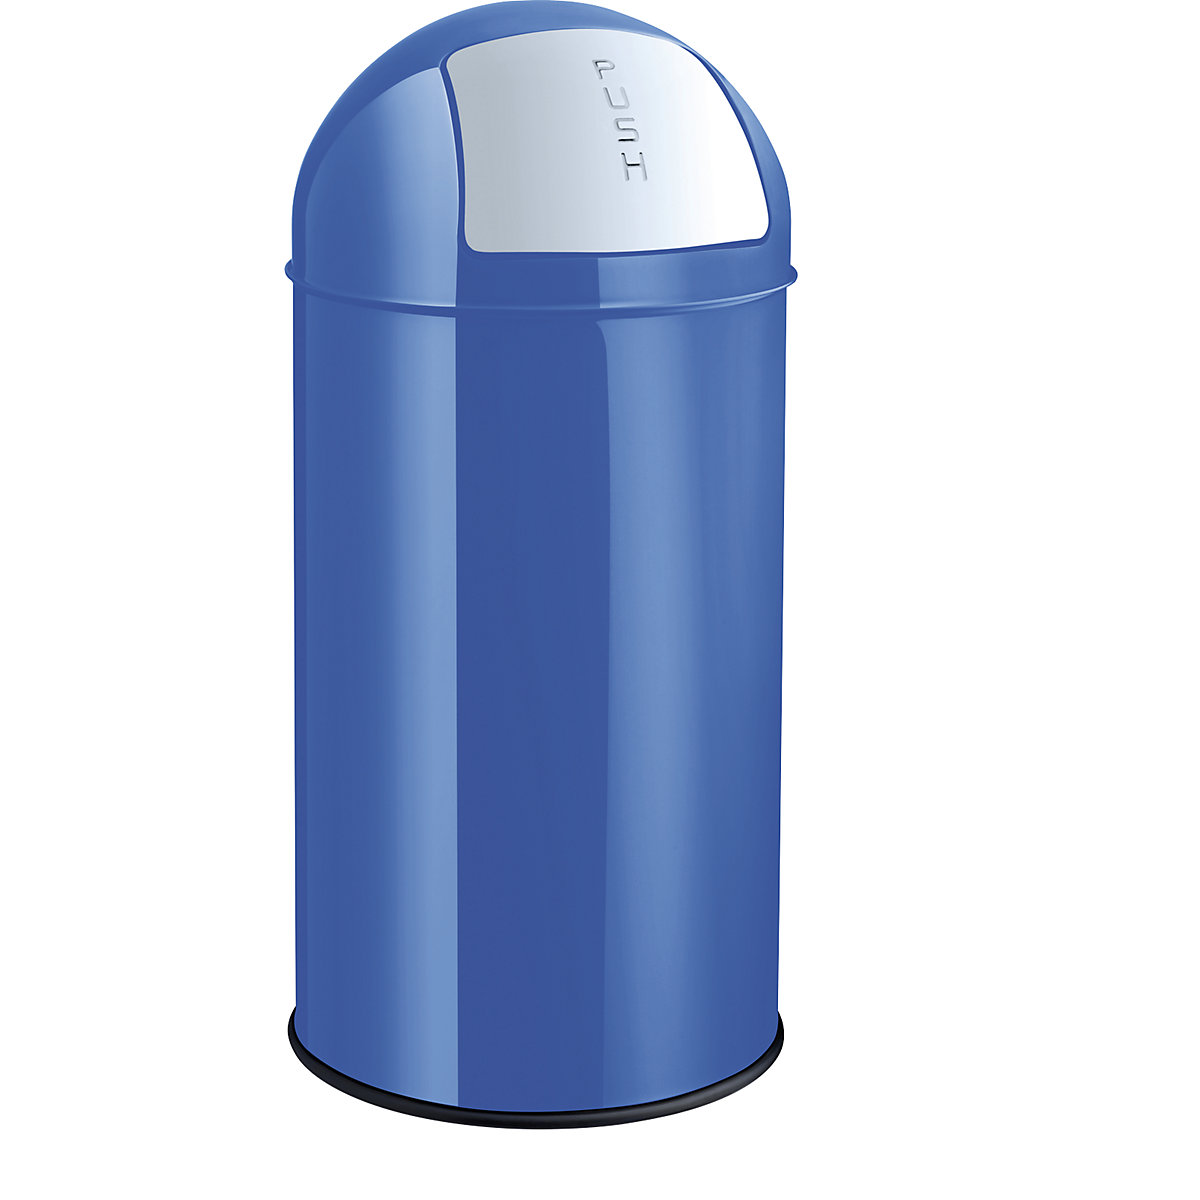 Spremnik za otpad od čelika s otvaranjem na pritisak – helit, volumen 50 l, VxØ 745 x 360 mm, u plavoj boji-4